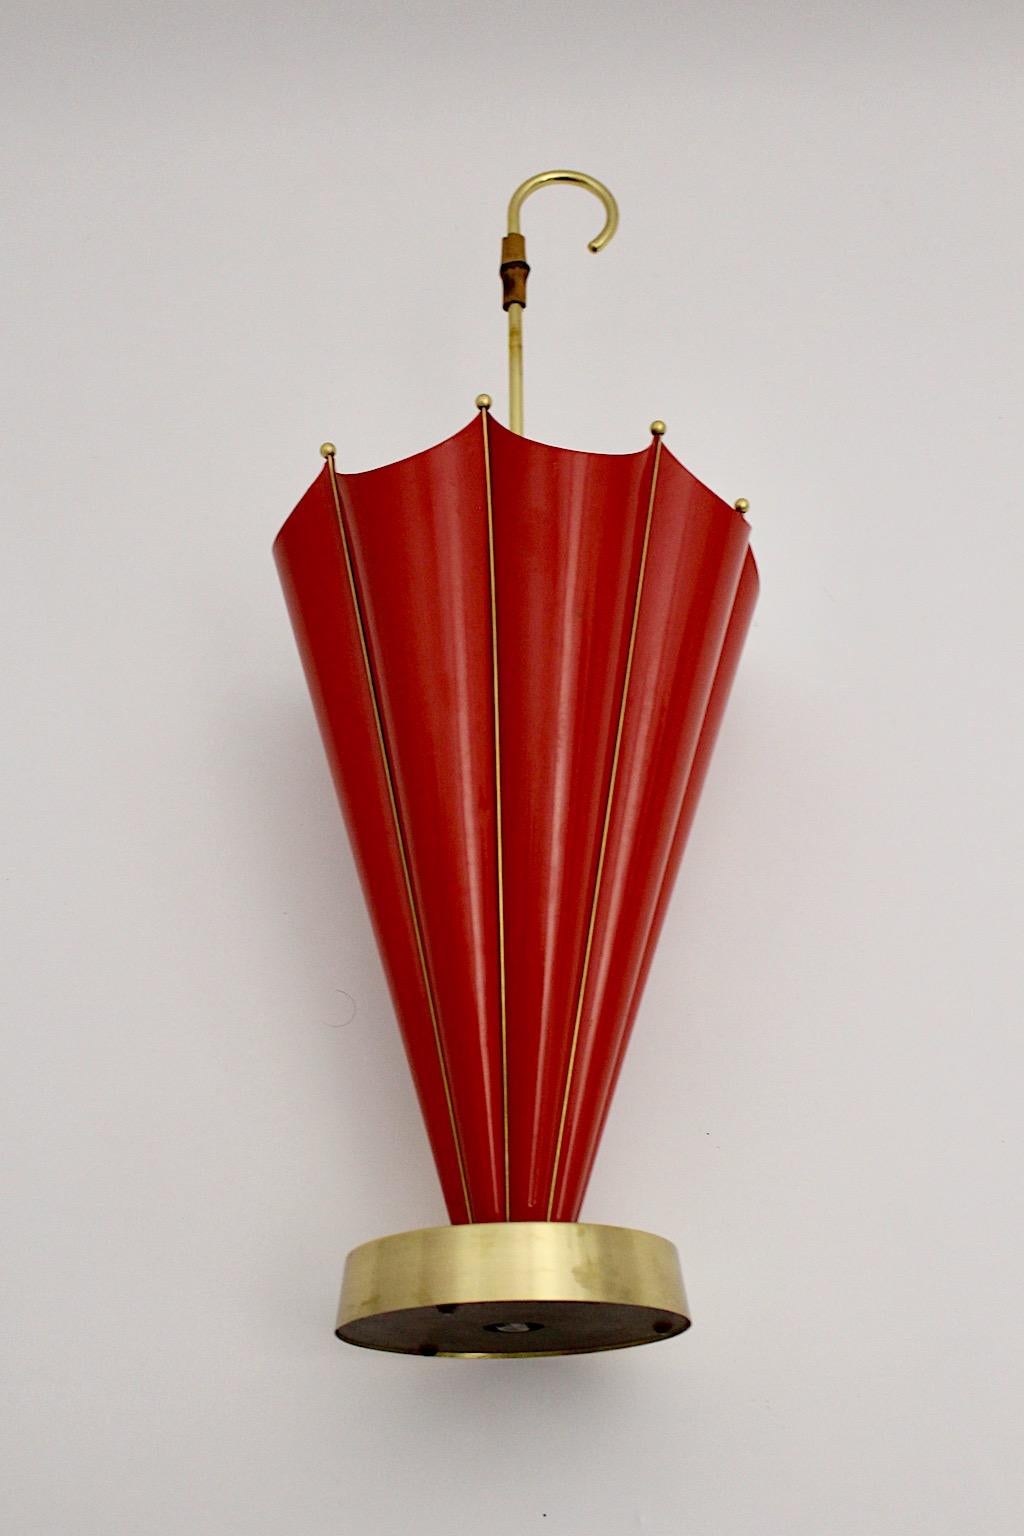 Mid-Century Modern Vintage Schirmständer oder Stockhalter aus rot lackiertem Metall, Messing und Bambus 1950er Jahre Italien.
Während der gusseiserne Sockel den Schirmständer für einen sicheren Stand trägt, hält der Korpus aus rot lackiertem Metall